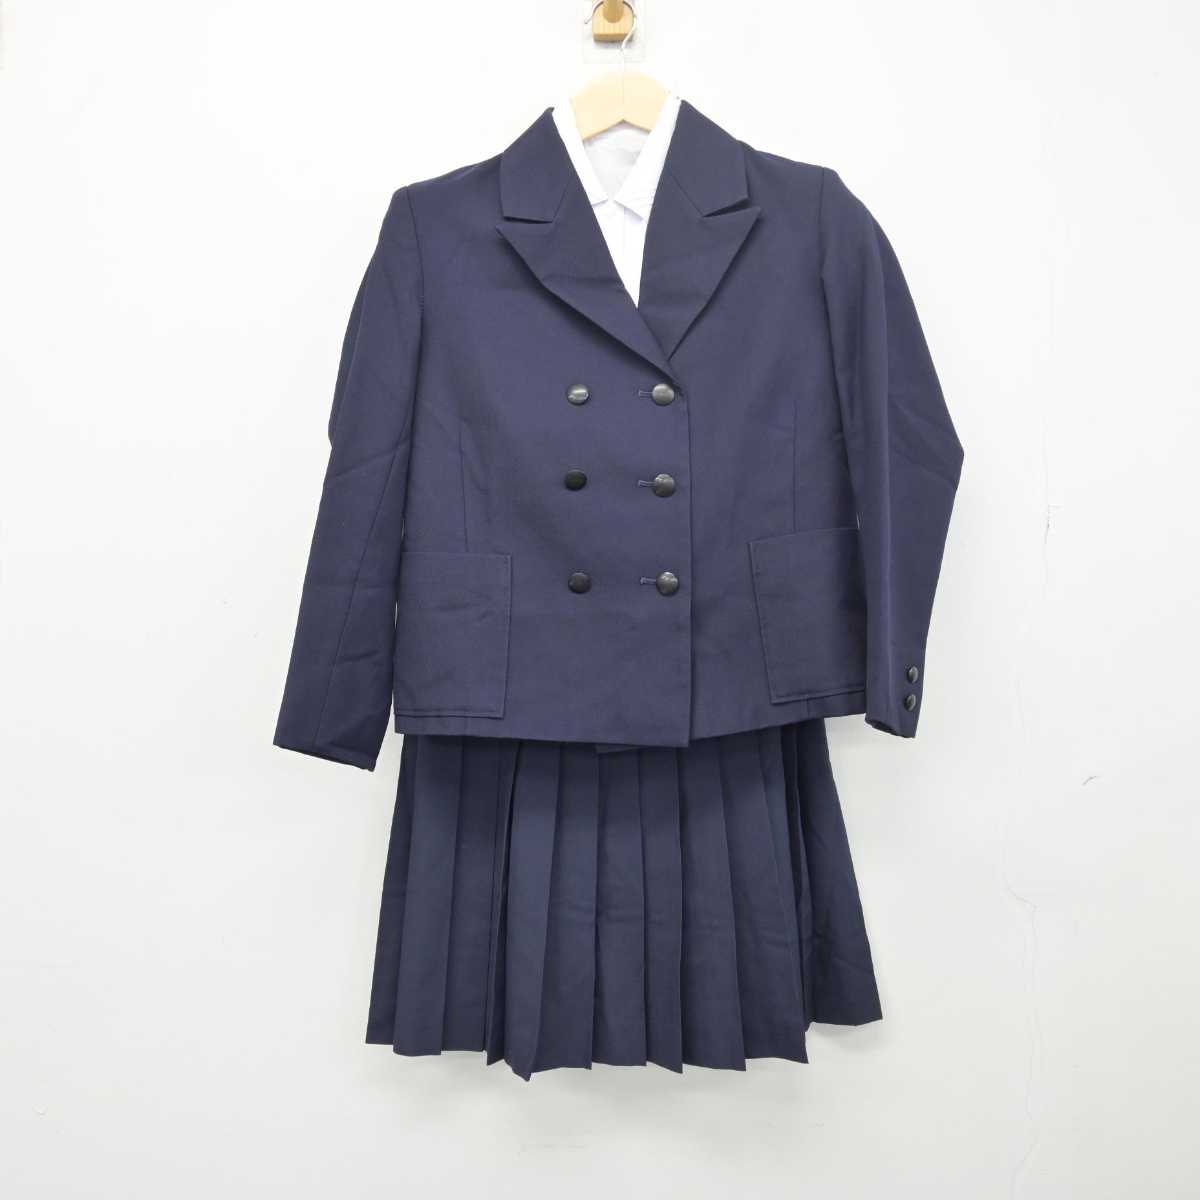 神奈川県立白山高校 制服 スカート 指定品 - スカート